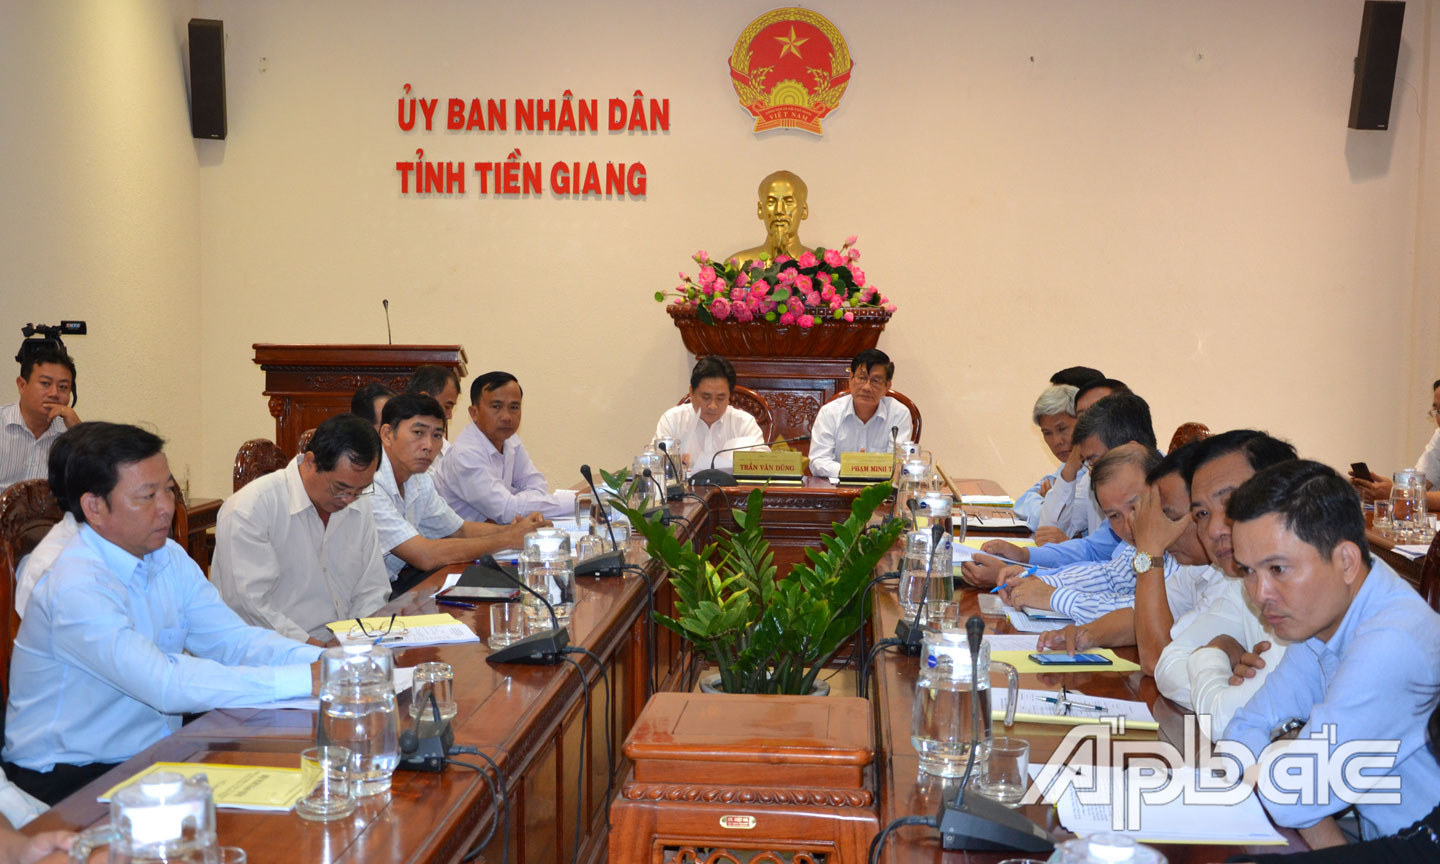 Quang cảnh hội nghị tại điểm cầu Tiền Giang.